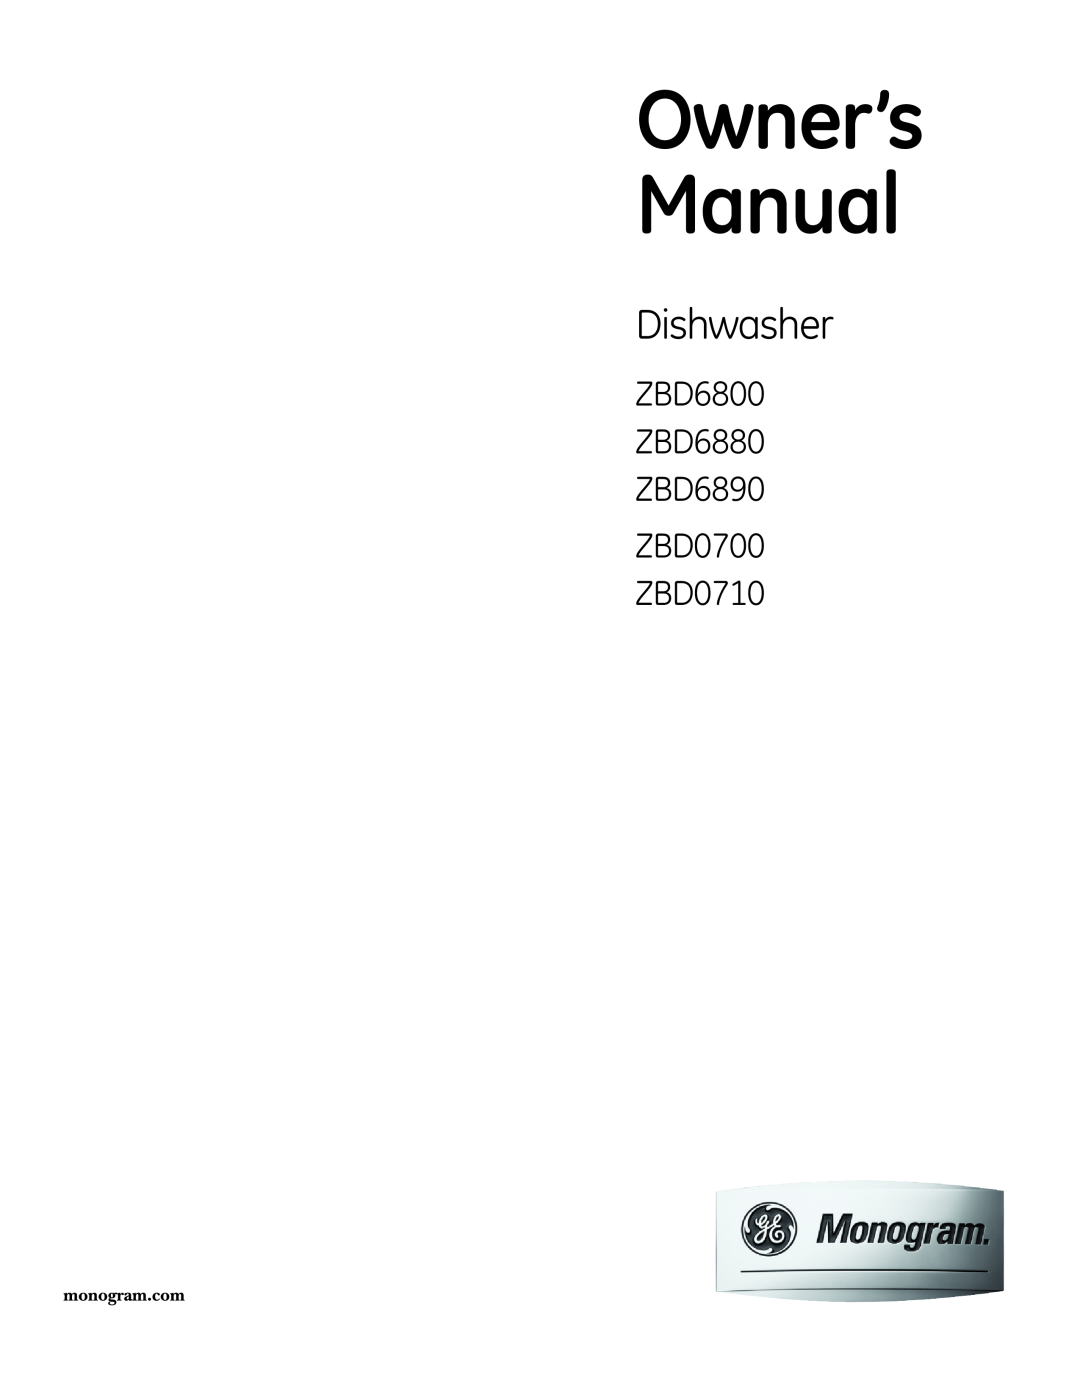 GE Monogram owner manual Dishwasher, ZBD6800 ZBD6880 ZBD6890 ZBD0700 ZBD0710, Owner’s Manual 